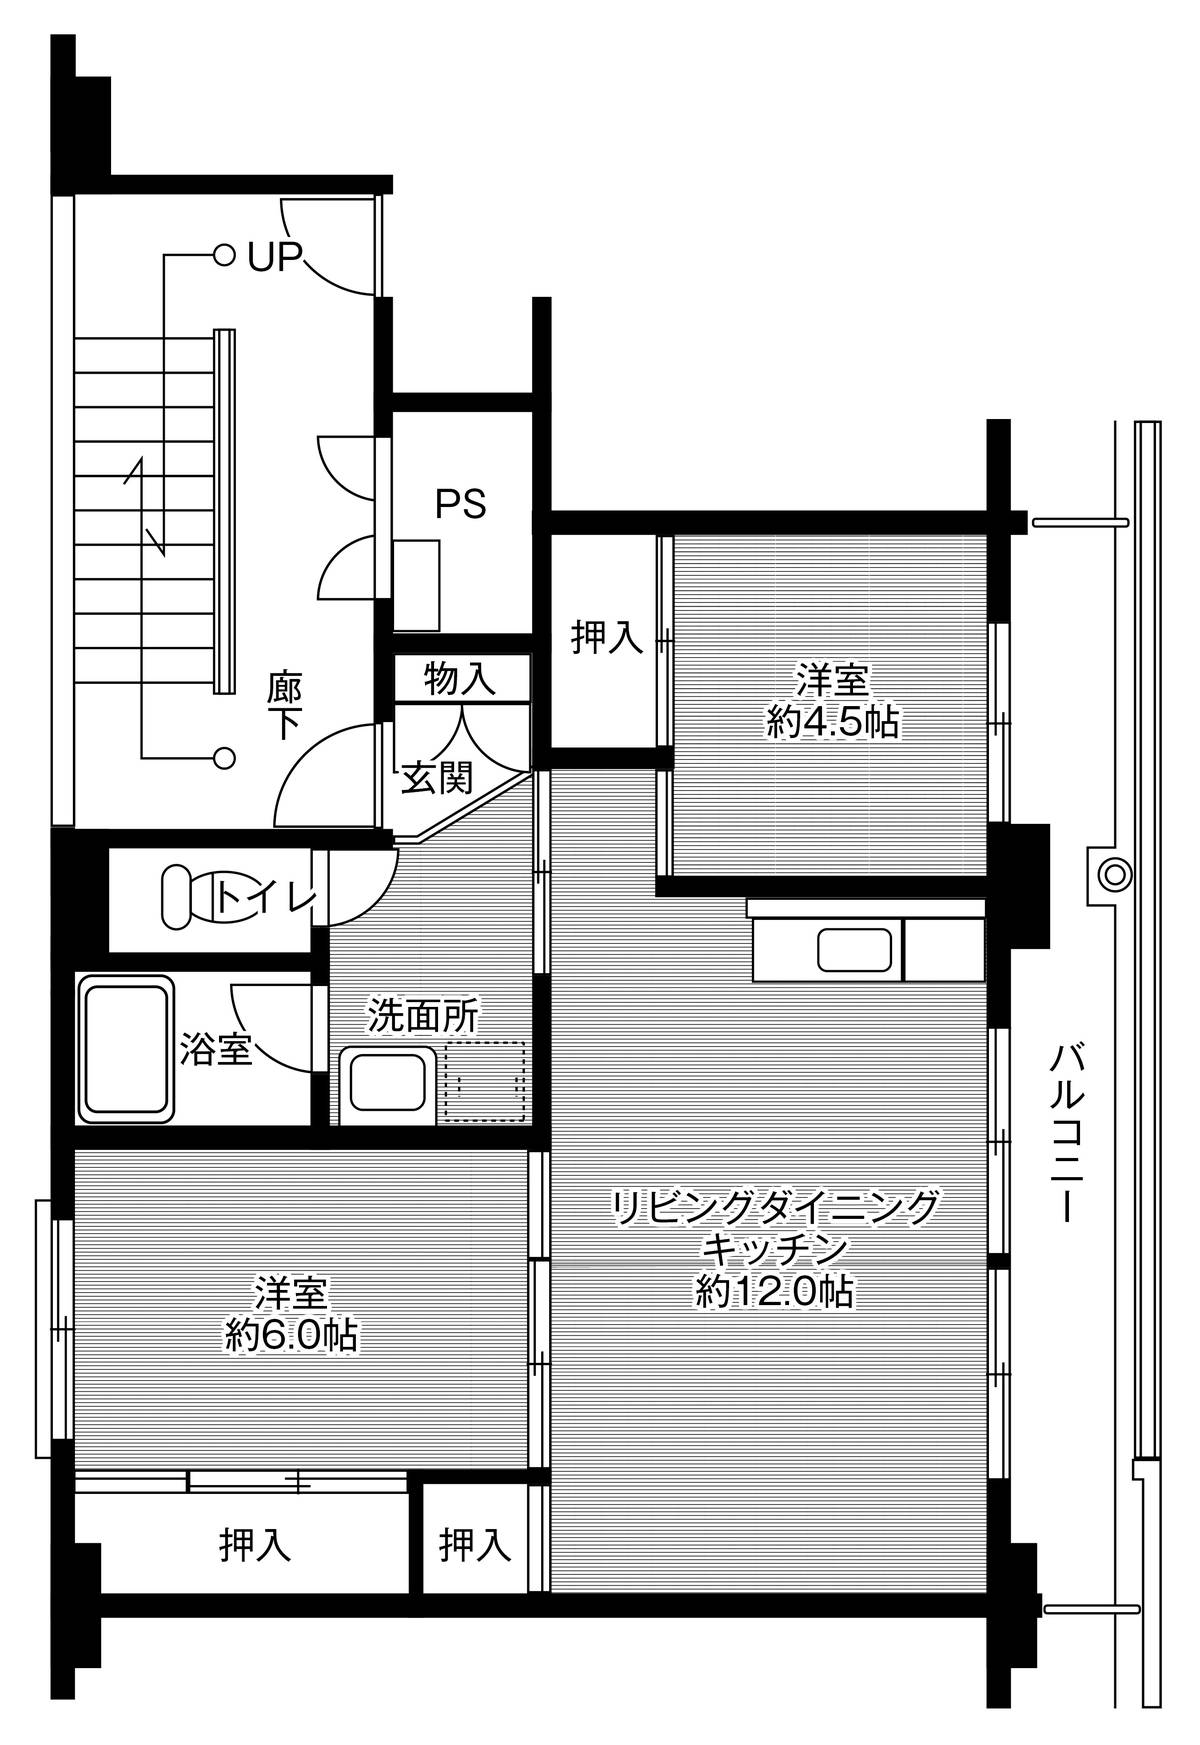 Sơ đồ phòng 2LDK của Village House Ushizu ở Ogi-shi